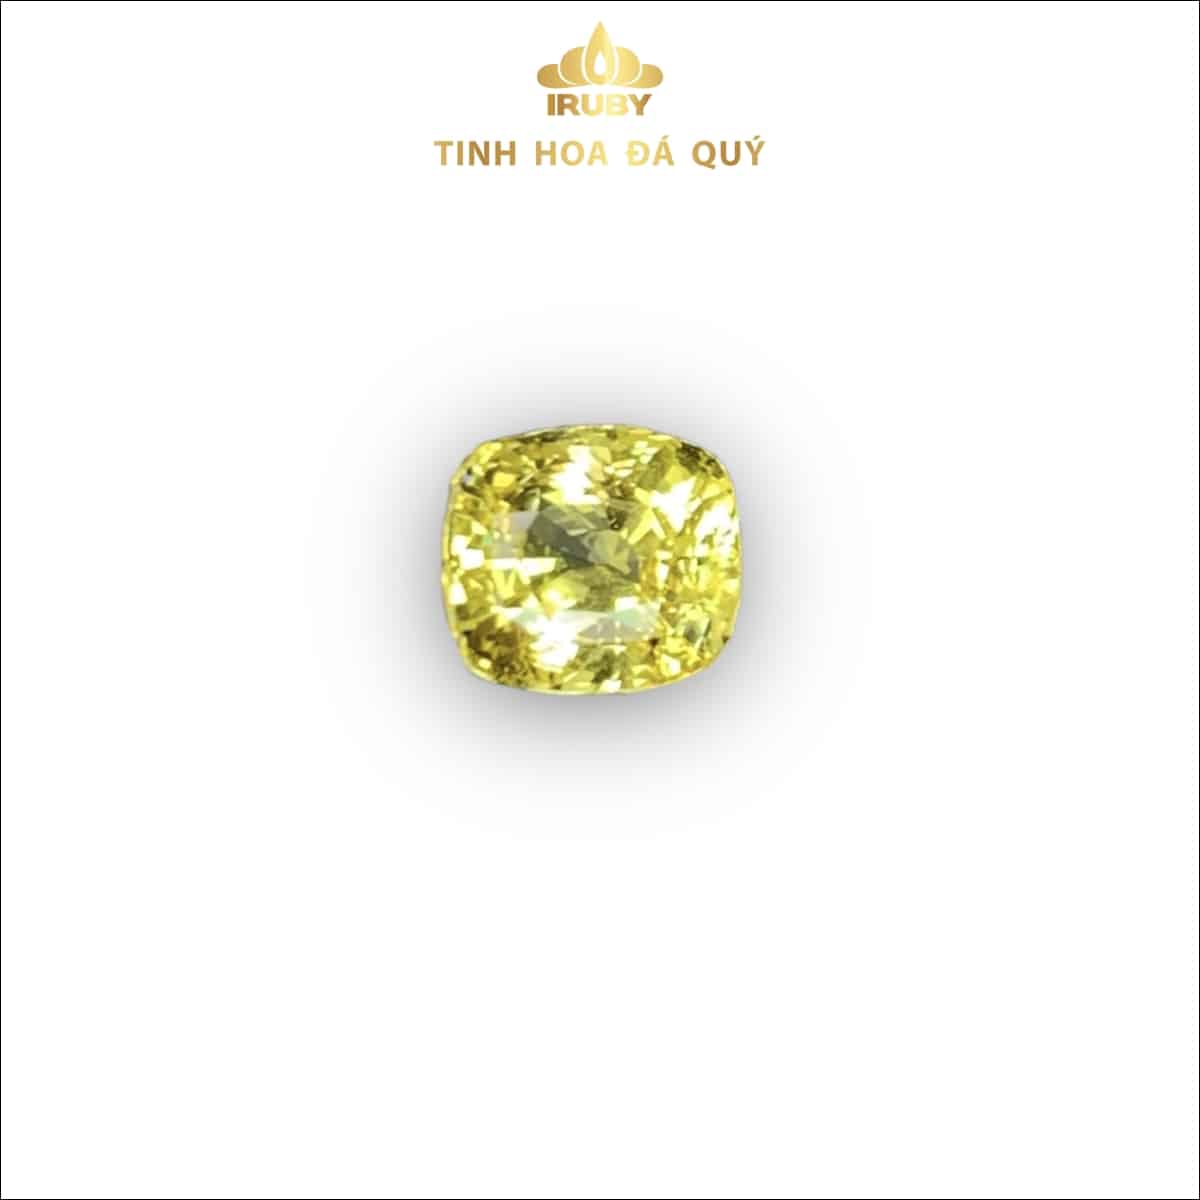 Viên Sapphire vàng tự nhiên không nhiệt 2,11ct - IRSY 233211